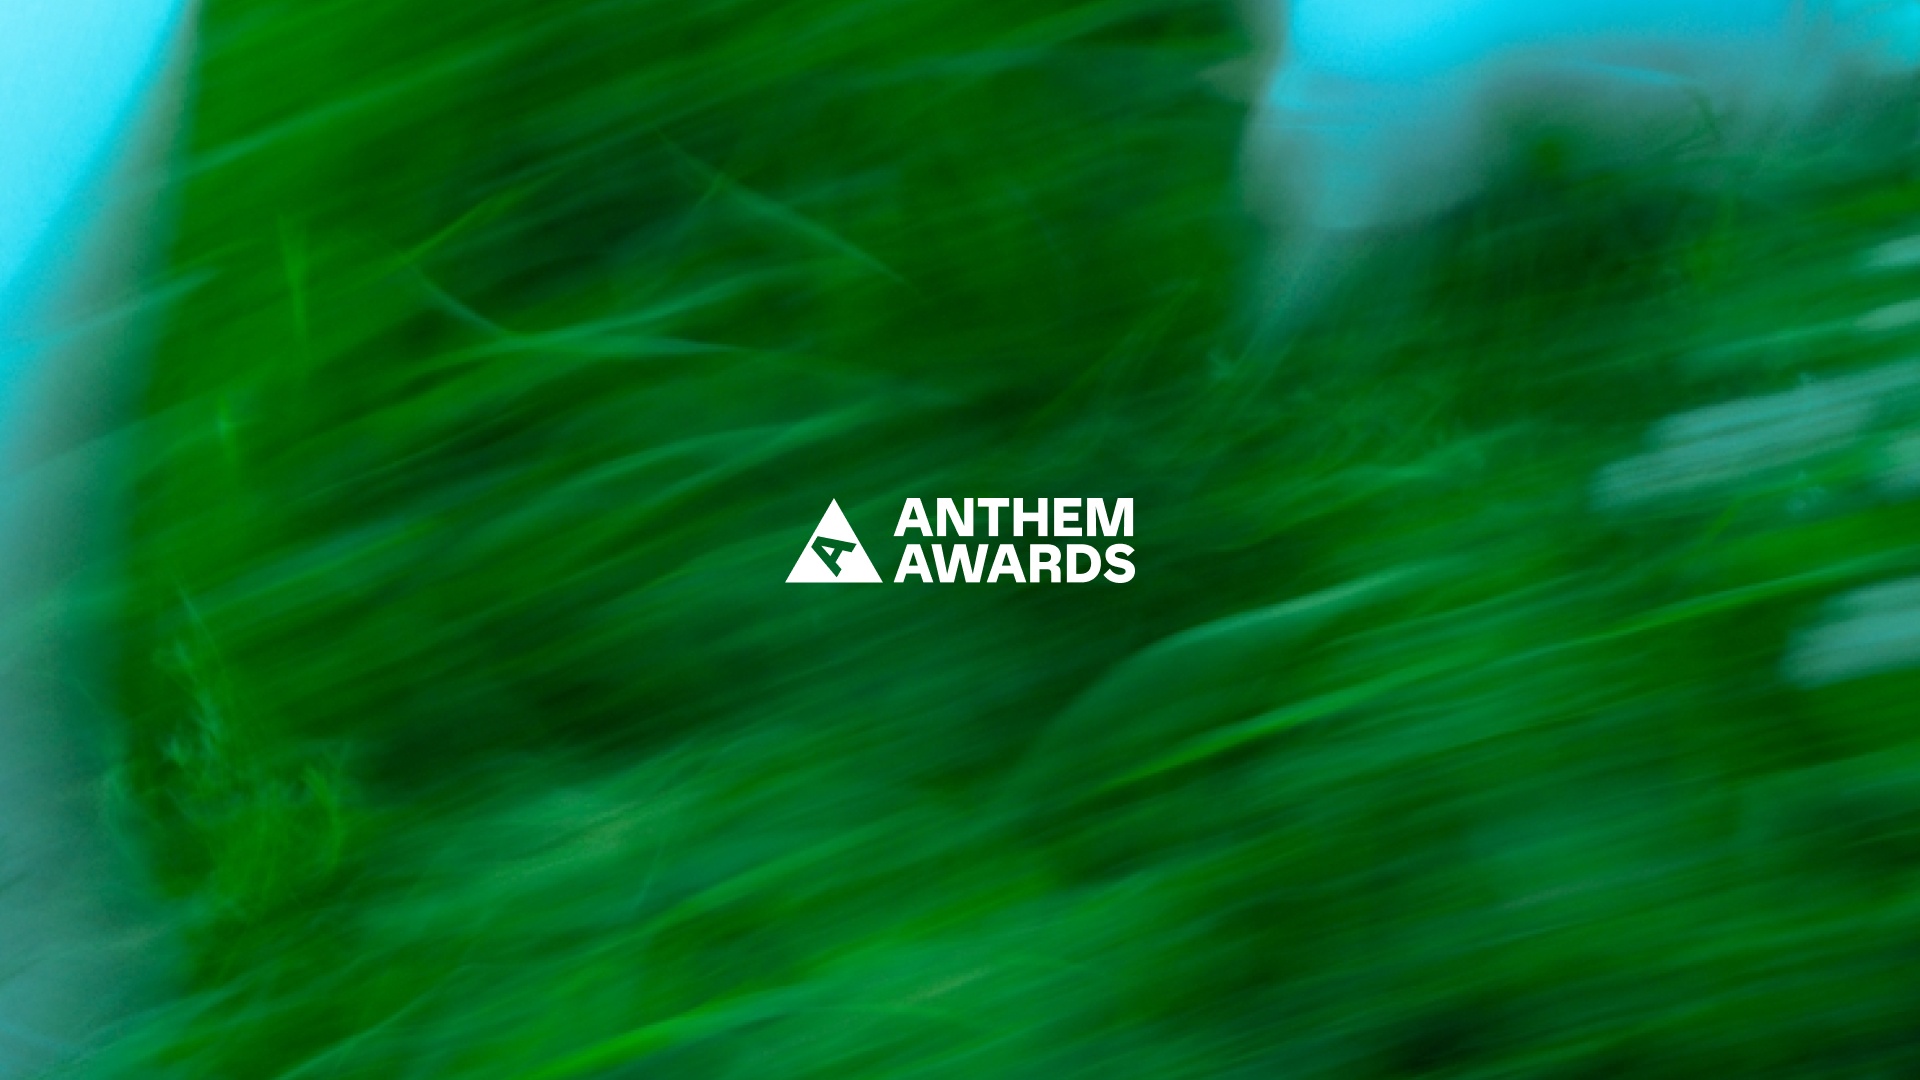 DEPT® wint 14 Anthem Awards voor werk met maatschappelijke impact